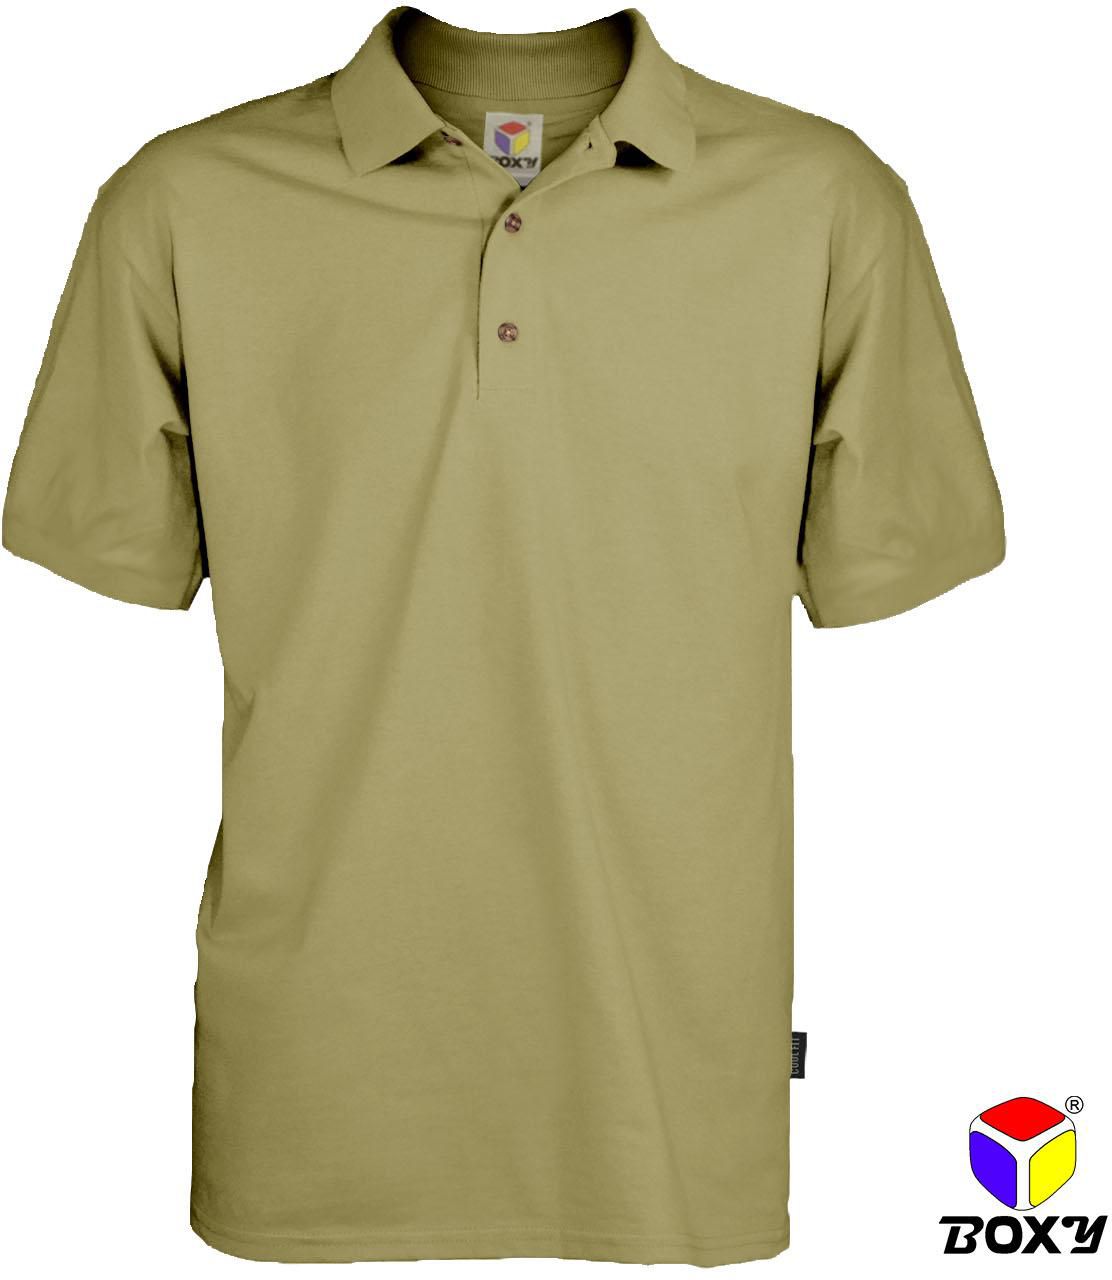 Boxy Microfiber Classic Short Sleeve Polo Shirts - 7 Sizes (Khaki)